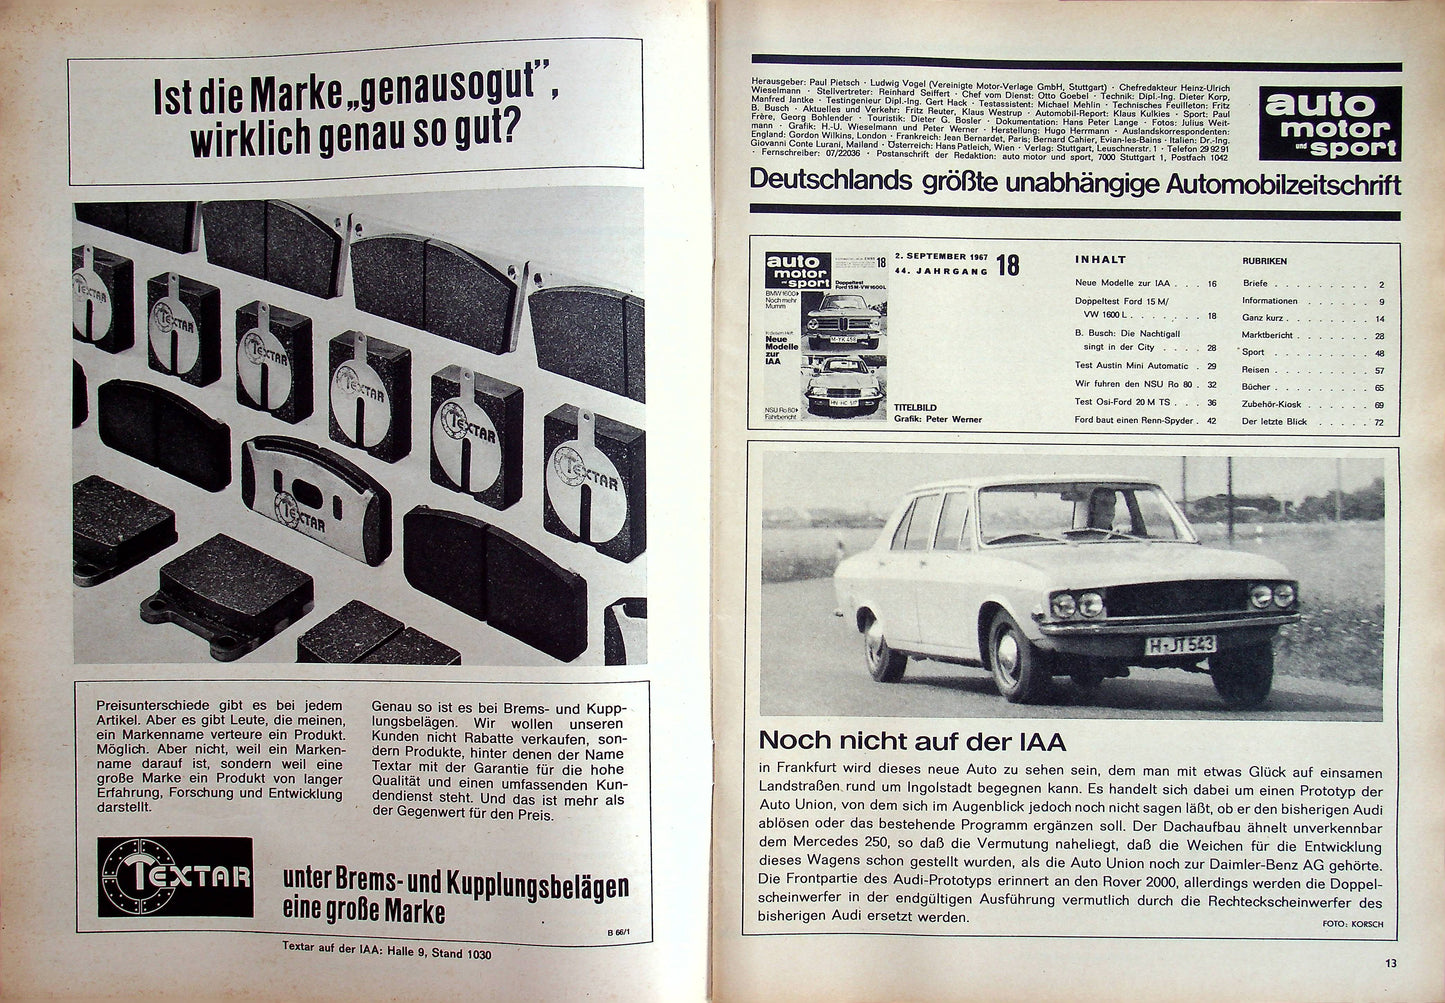 Auto Motor und Sport 18/1967